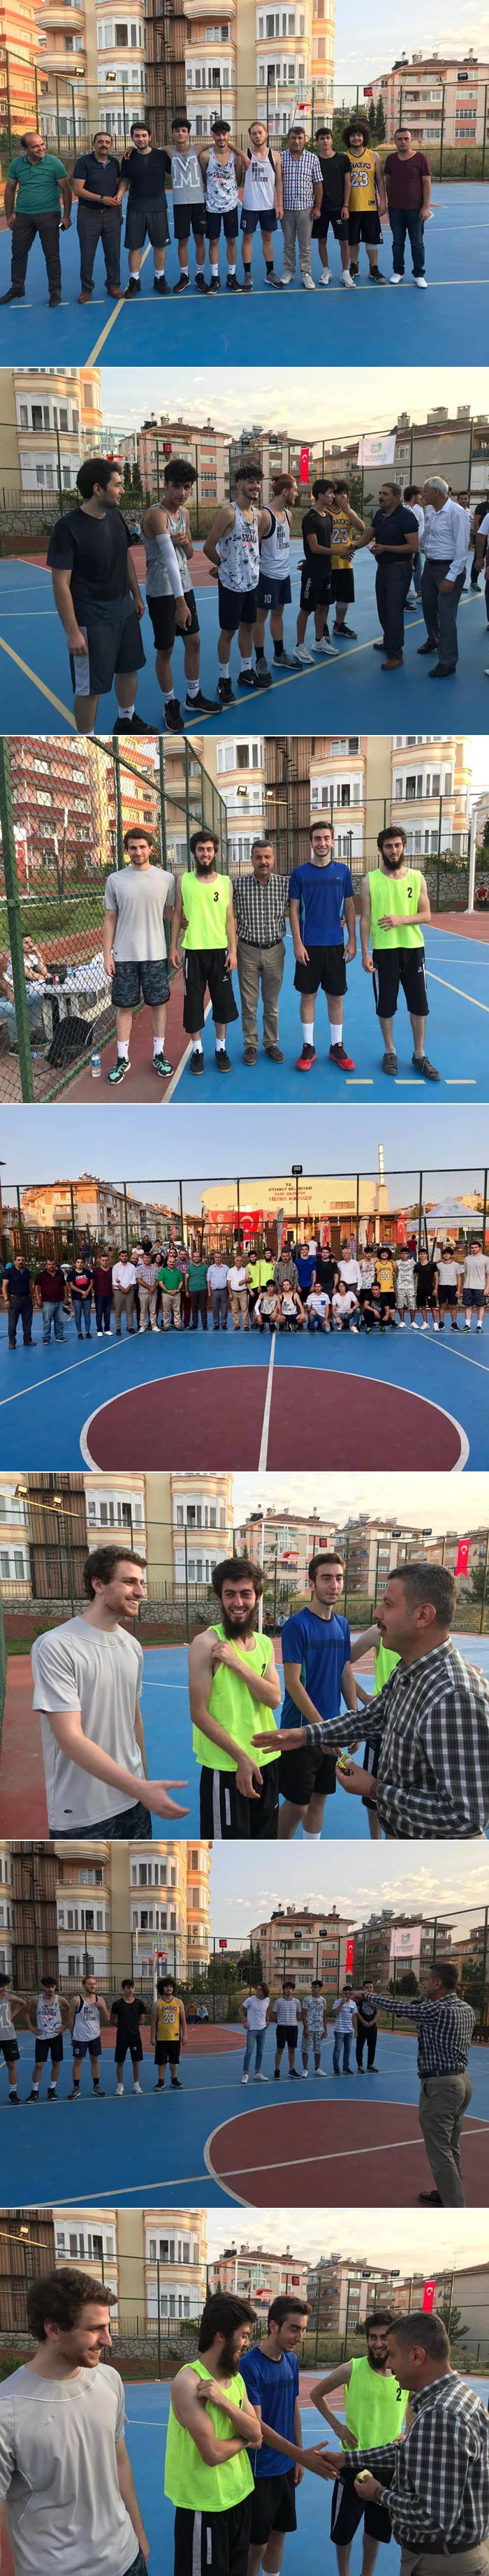 Boyabat Belediyesi organizasyonu eşliğinde 30 Ağustos Zafer Bayramı etkinlikleri kapsamında düzenlenen basketbol turnuvasında Boyabat Genç Esnaflar basketbol takımı şampiyon oldu.